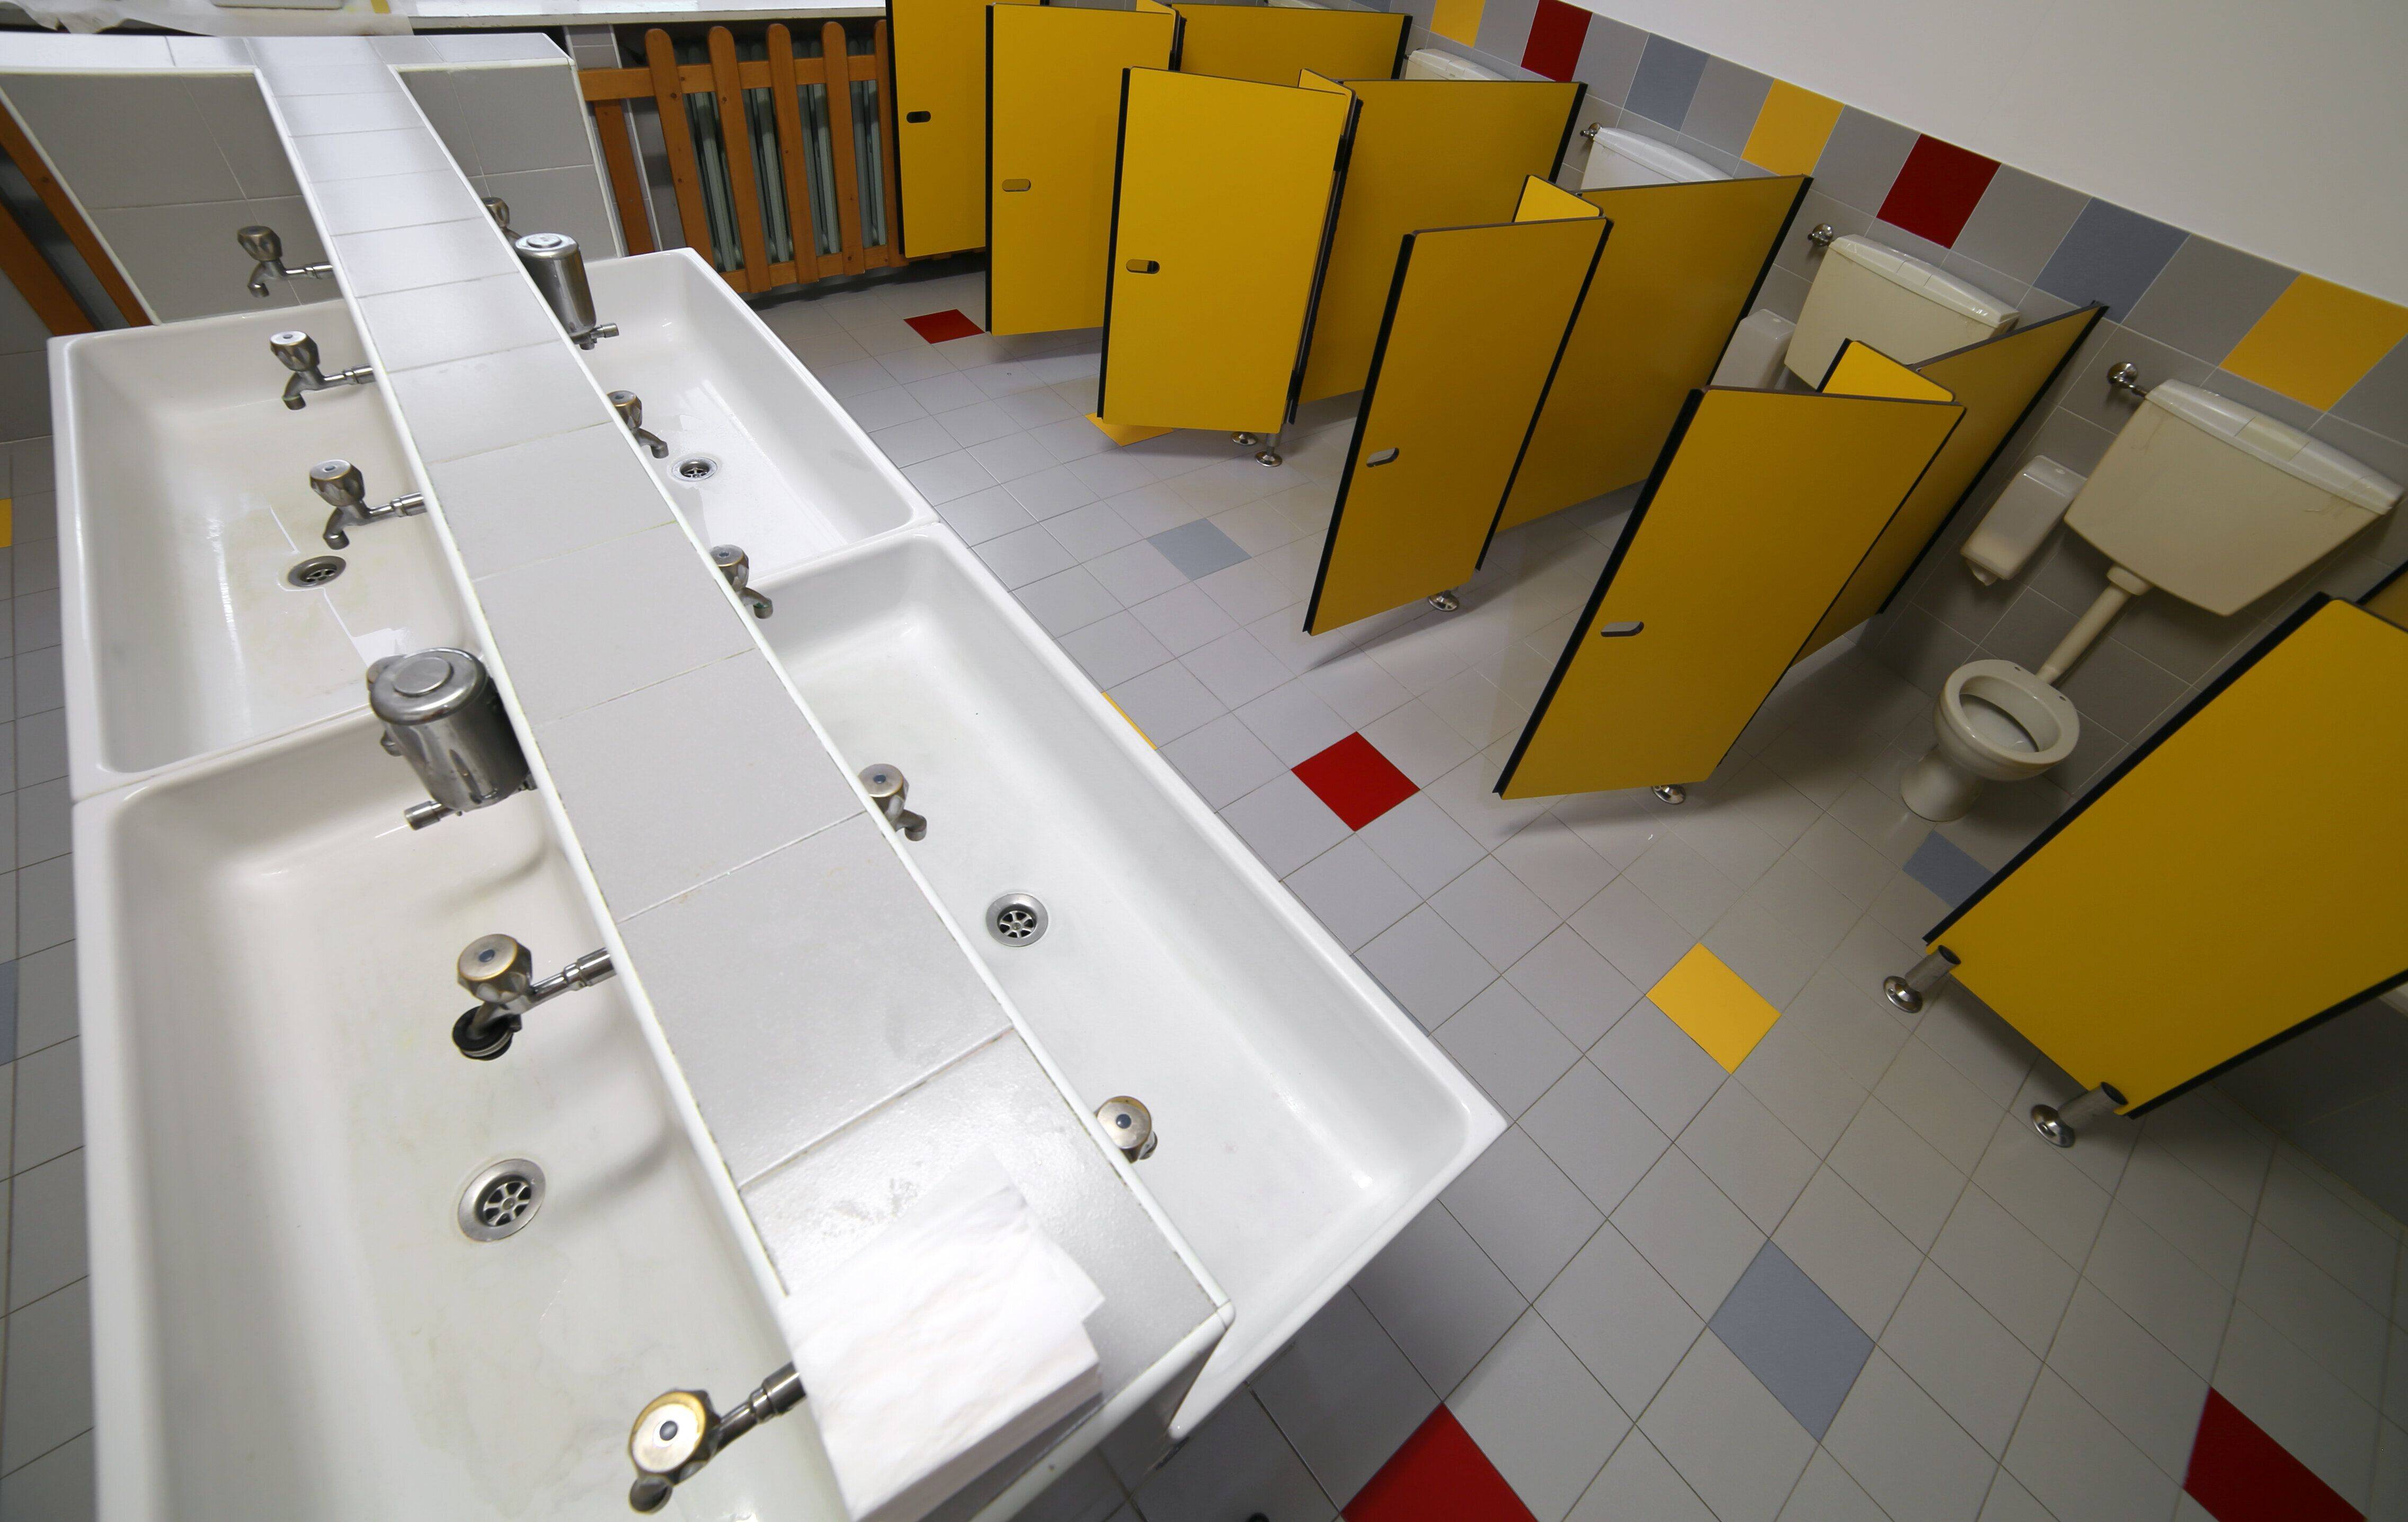 Pourquoi Les Toilettes L Cole Sont Toujours Un Sujet Tabou En France En